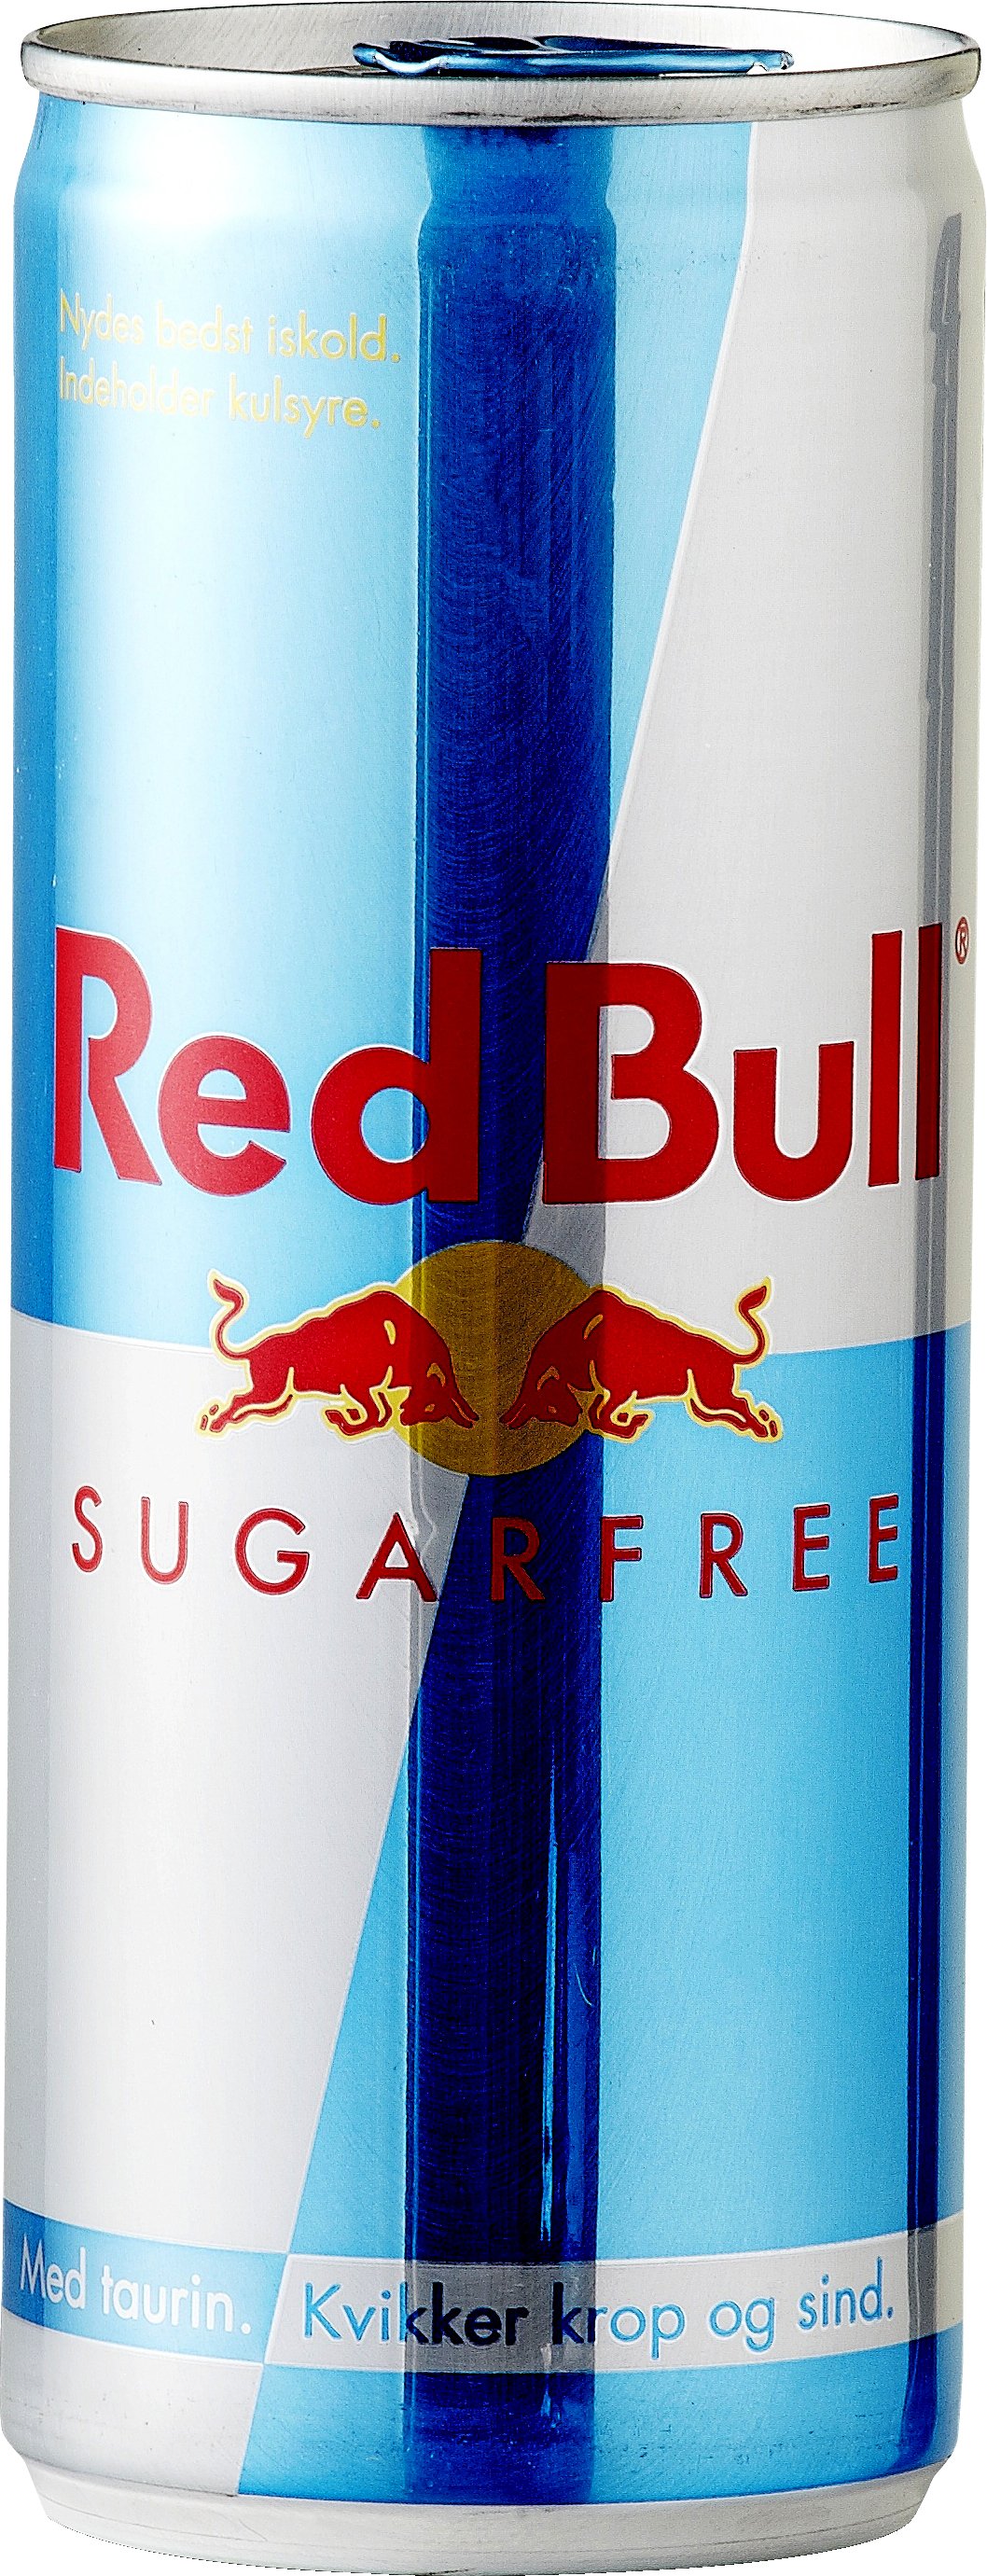 Selv tak overgive Midler Red Bull Sugarfree 25 cl. - ENERGIDRIKKE - VIN MED MERE .DK